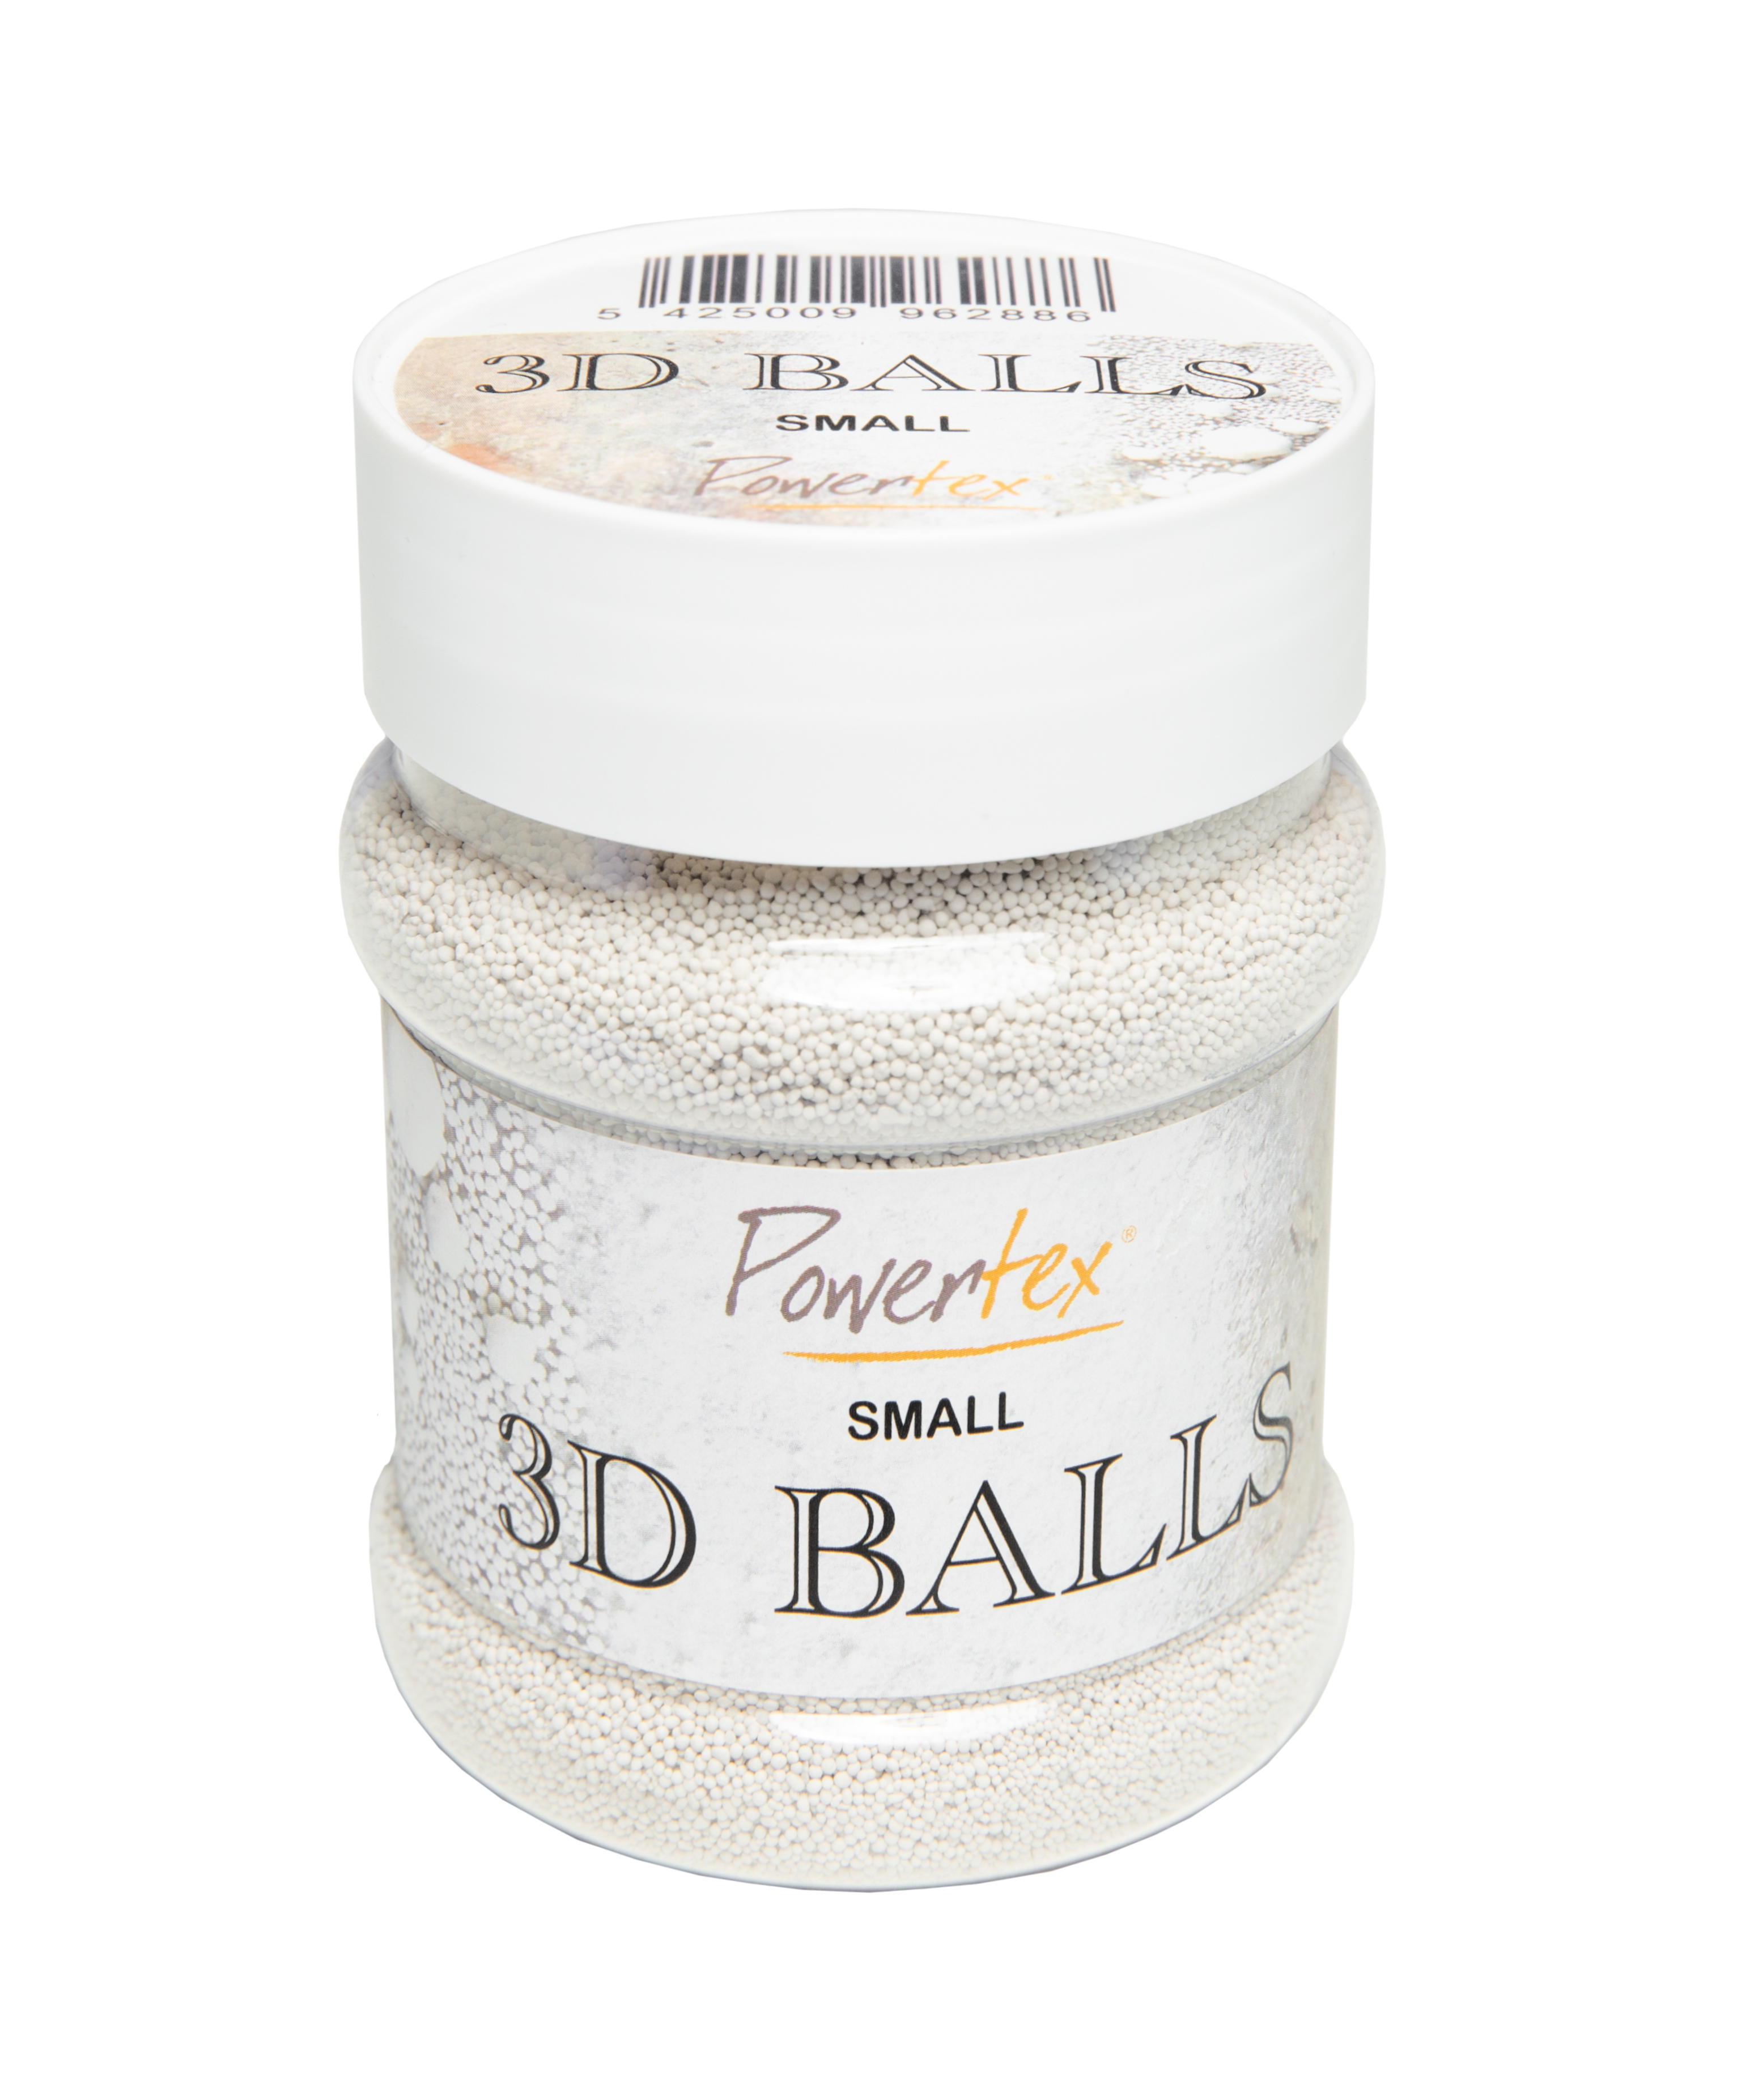 Powertex 3D-Balls small, 230 ml